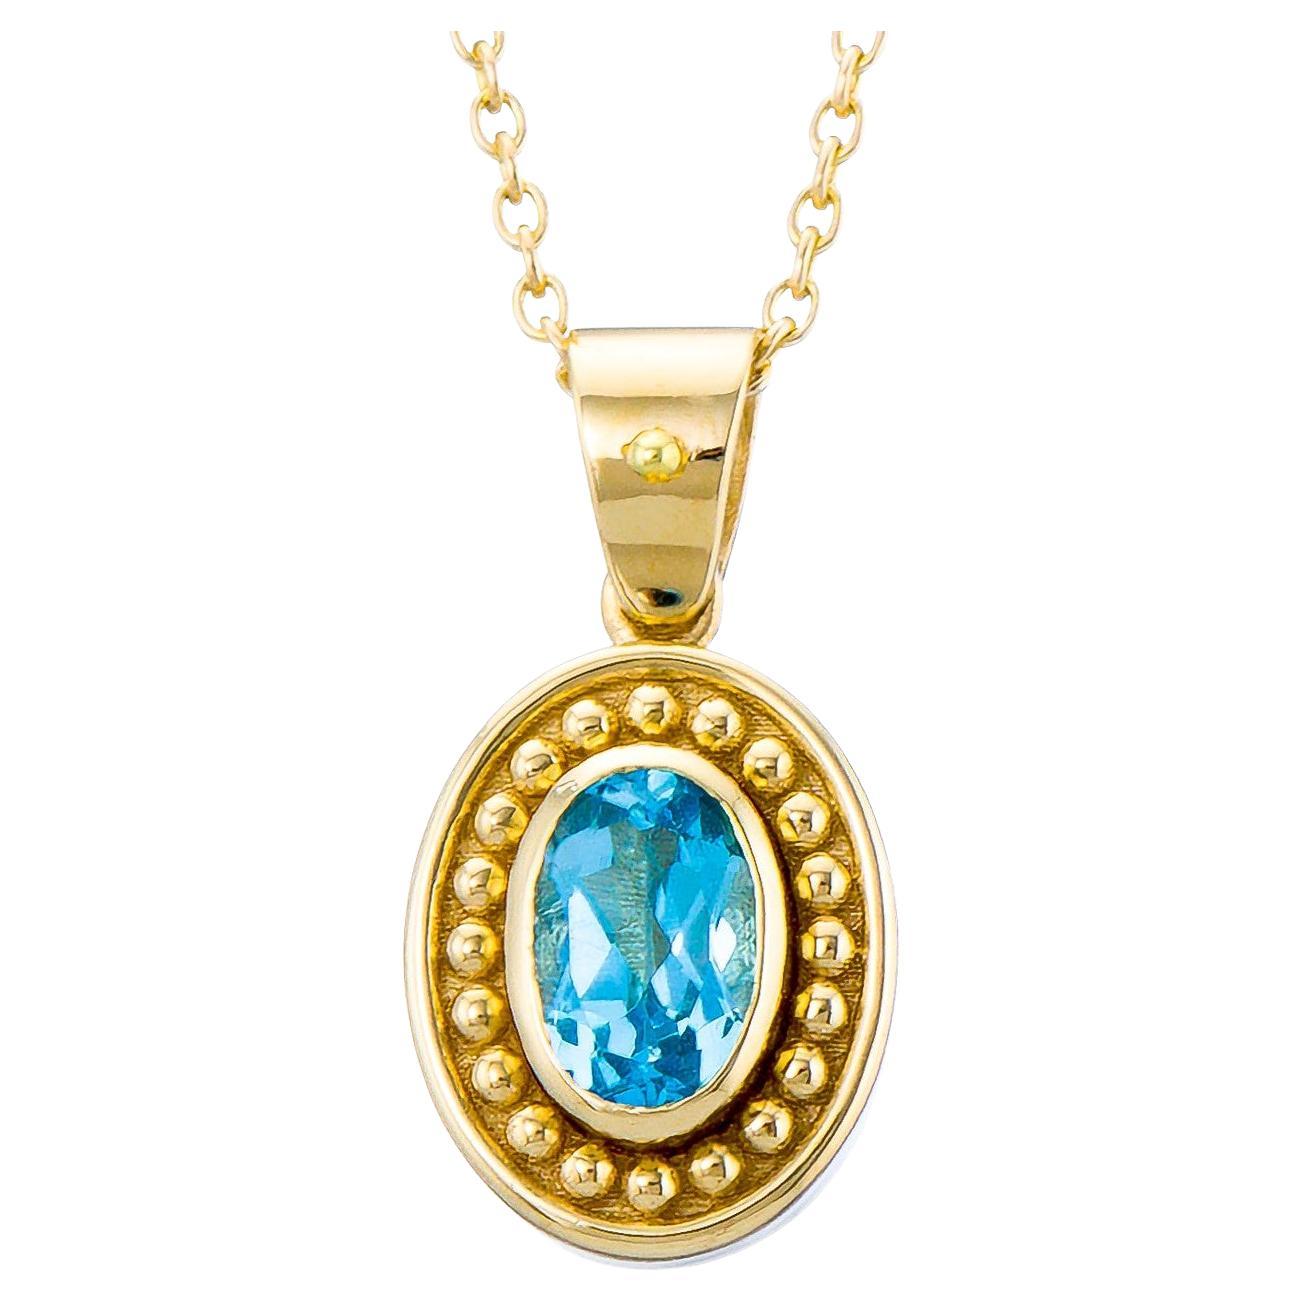 Gold Byzantine Pendant with Swiss Blue Topaz